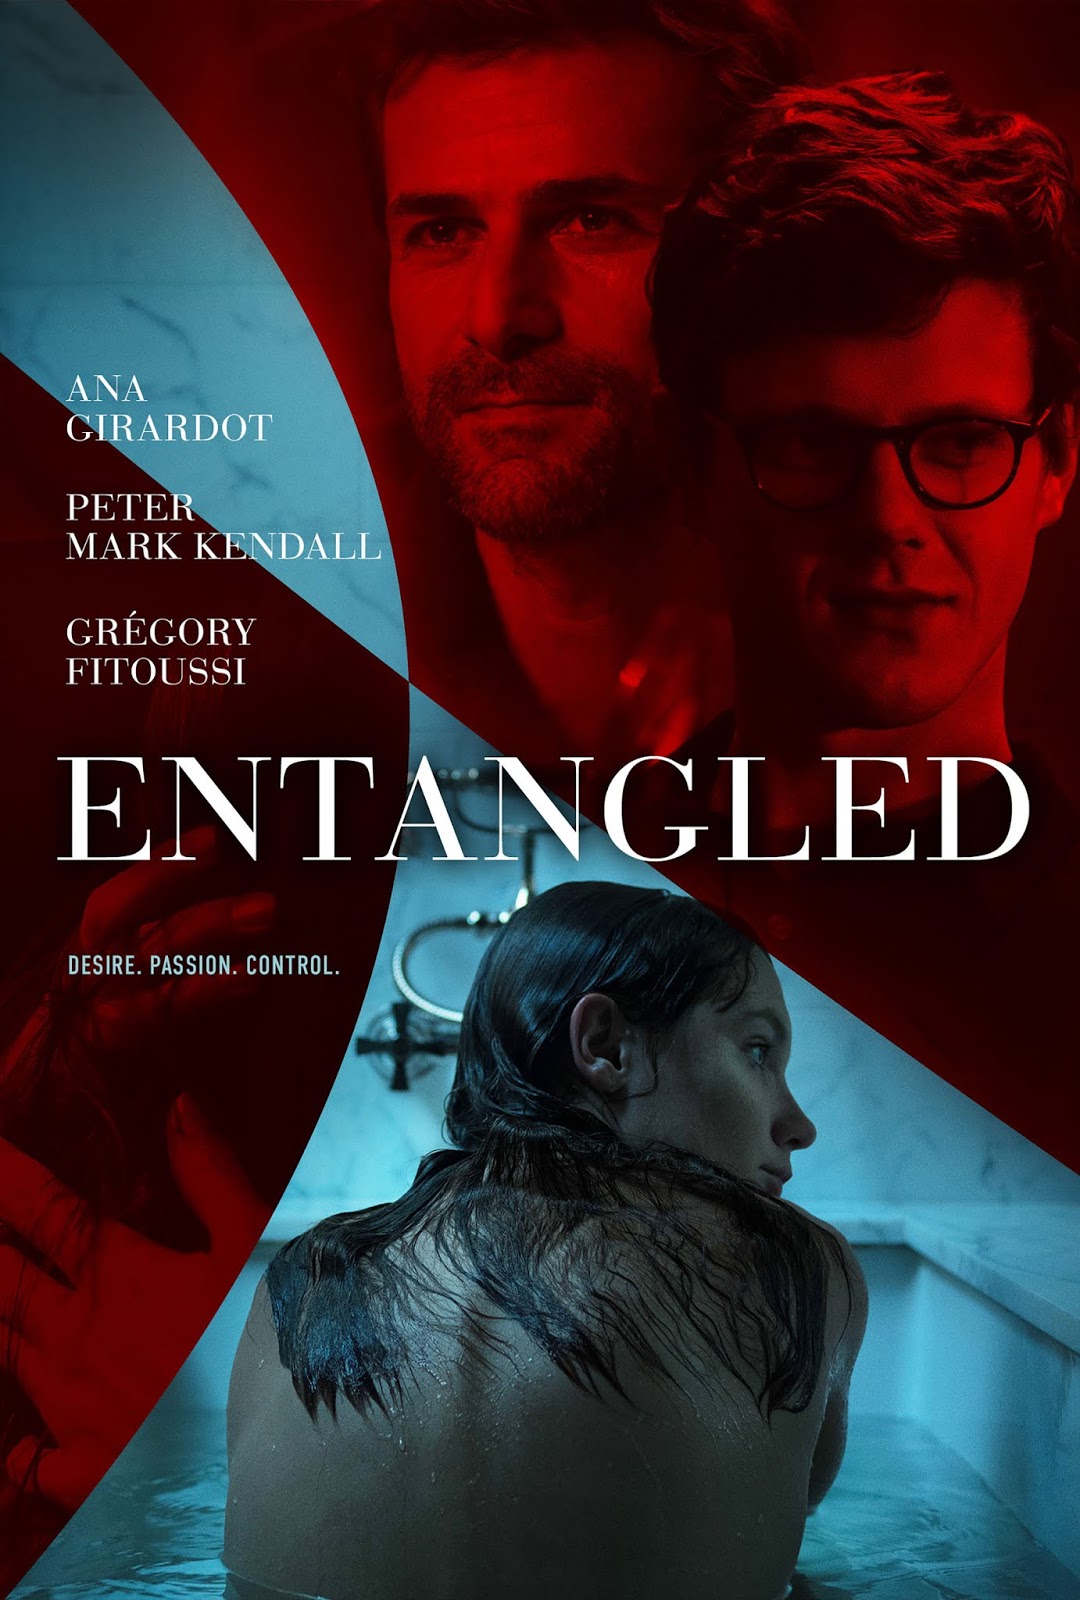 TrustMovies VOD/digital premiere for Milena Luries debut film, ENTANGLED